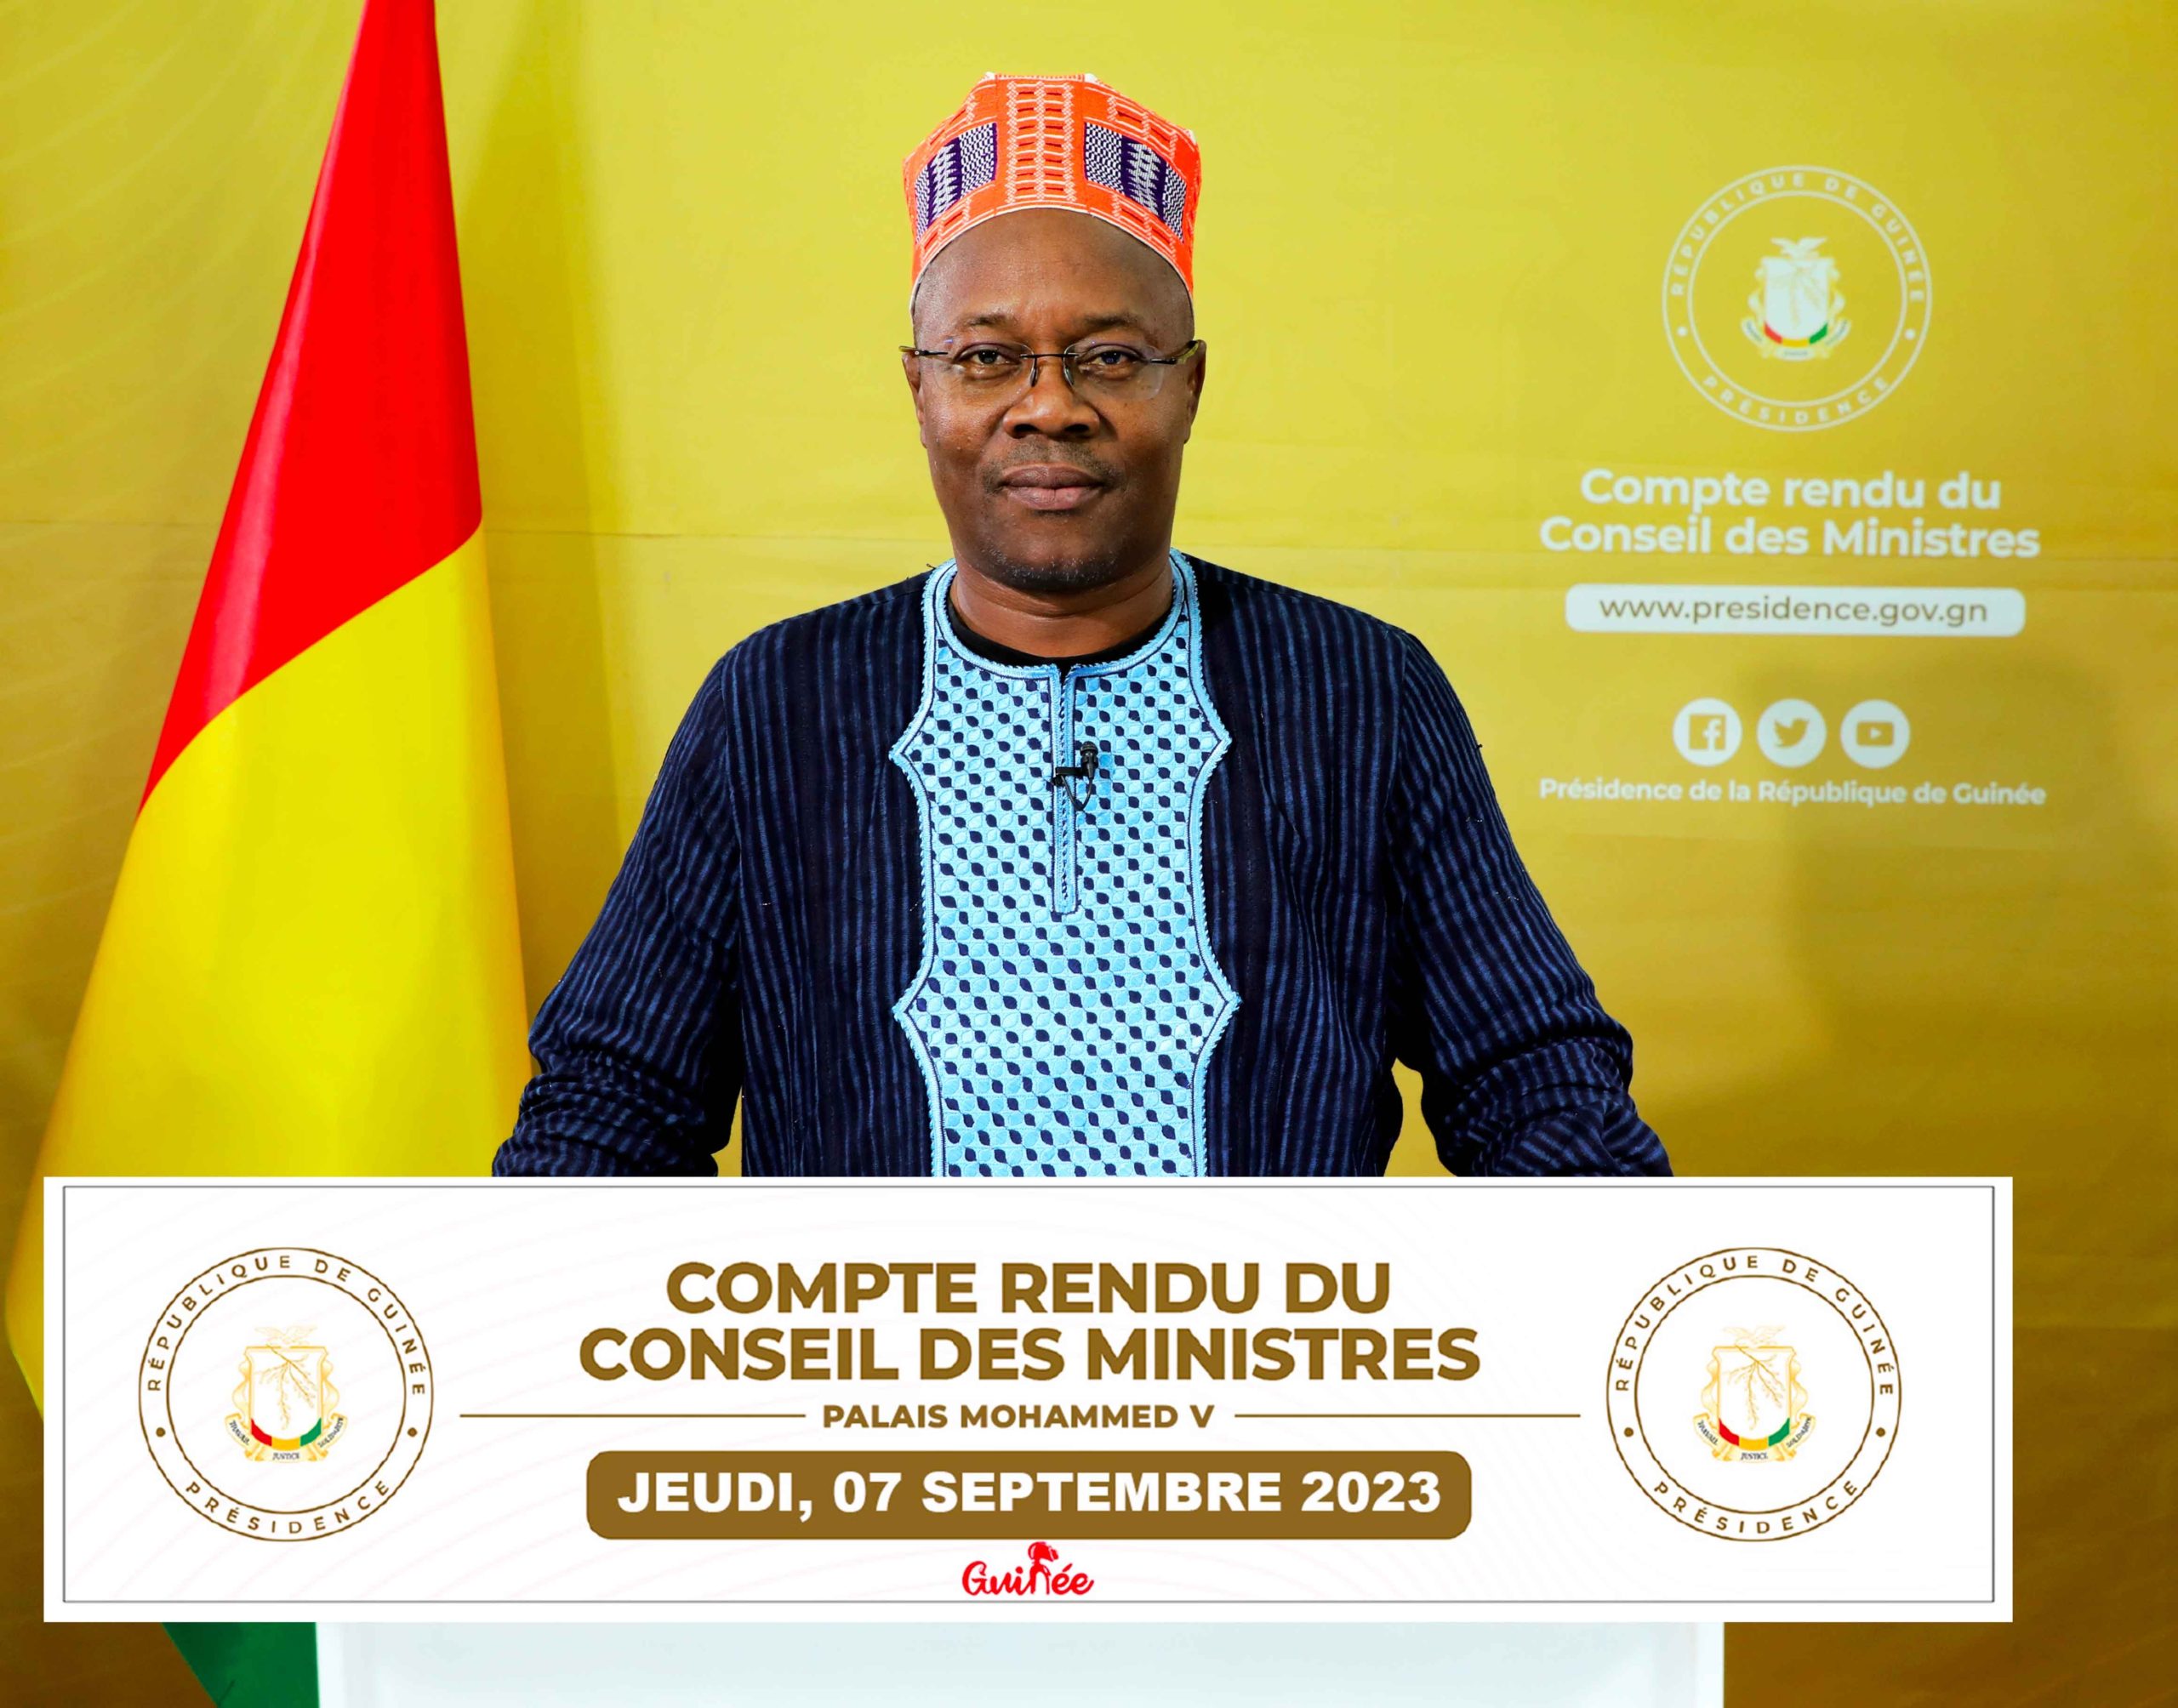 Guinée: voici le compte rendu du conseil des ministres du jeudi 07 septembre 2023